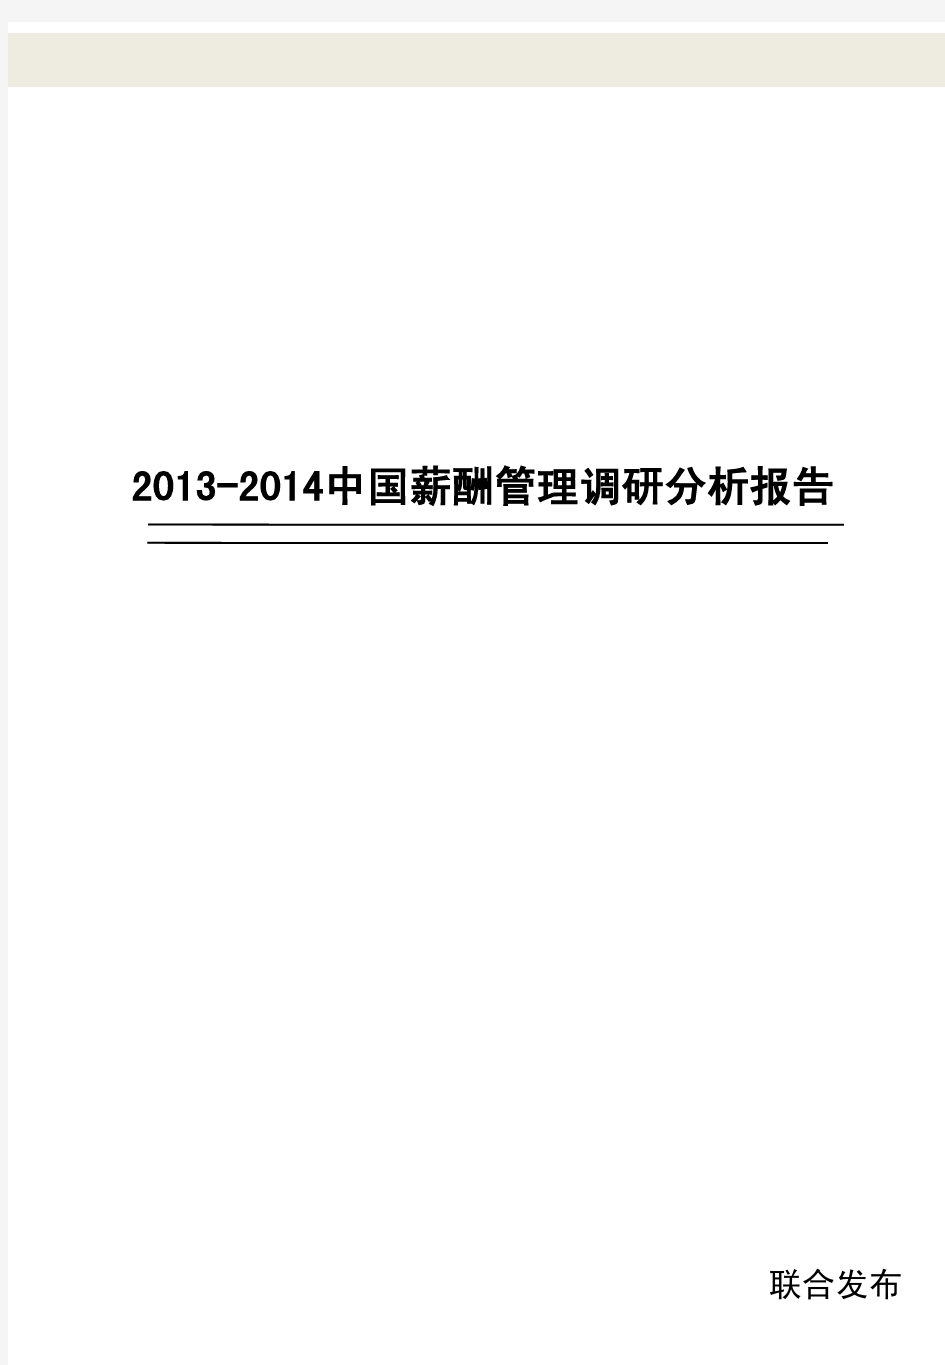 2013-2014年企业薪酬管理调研报告